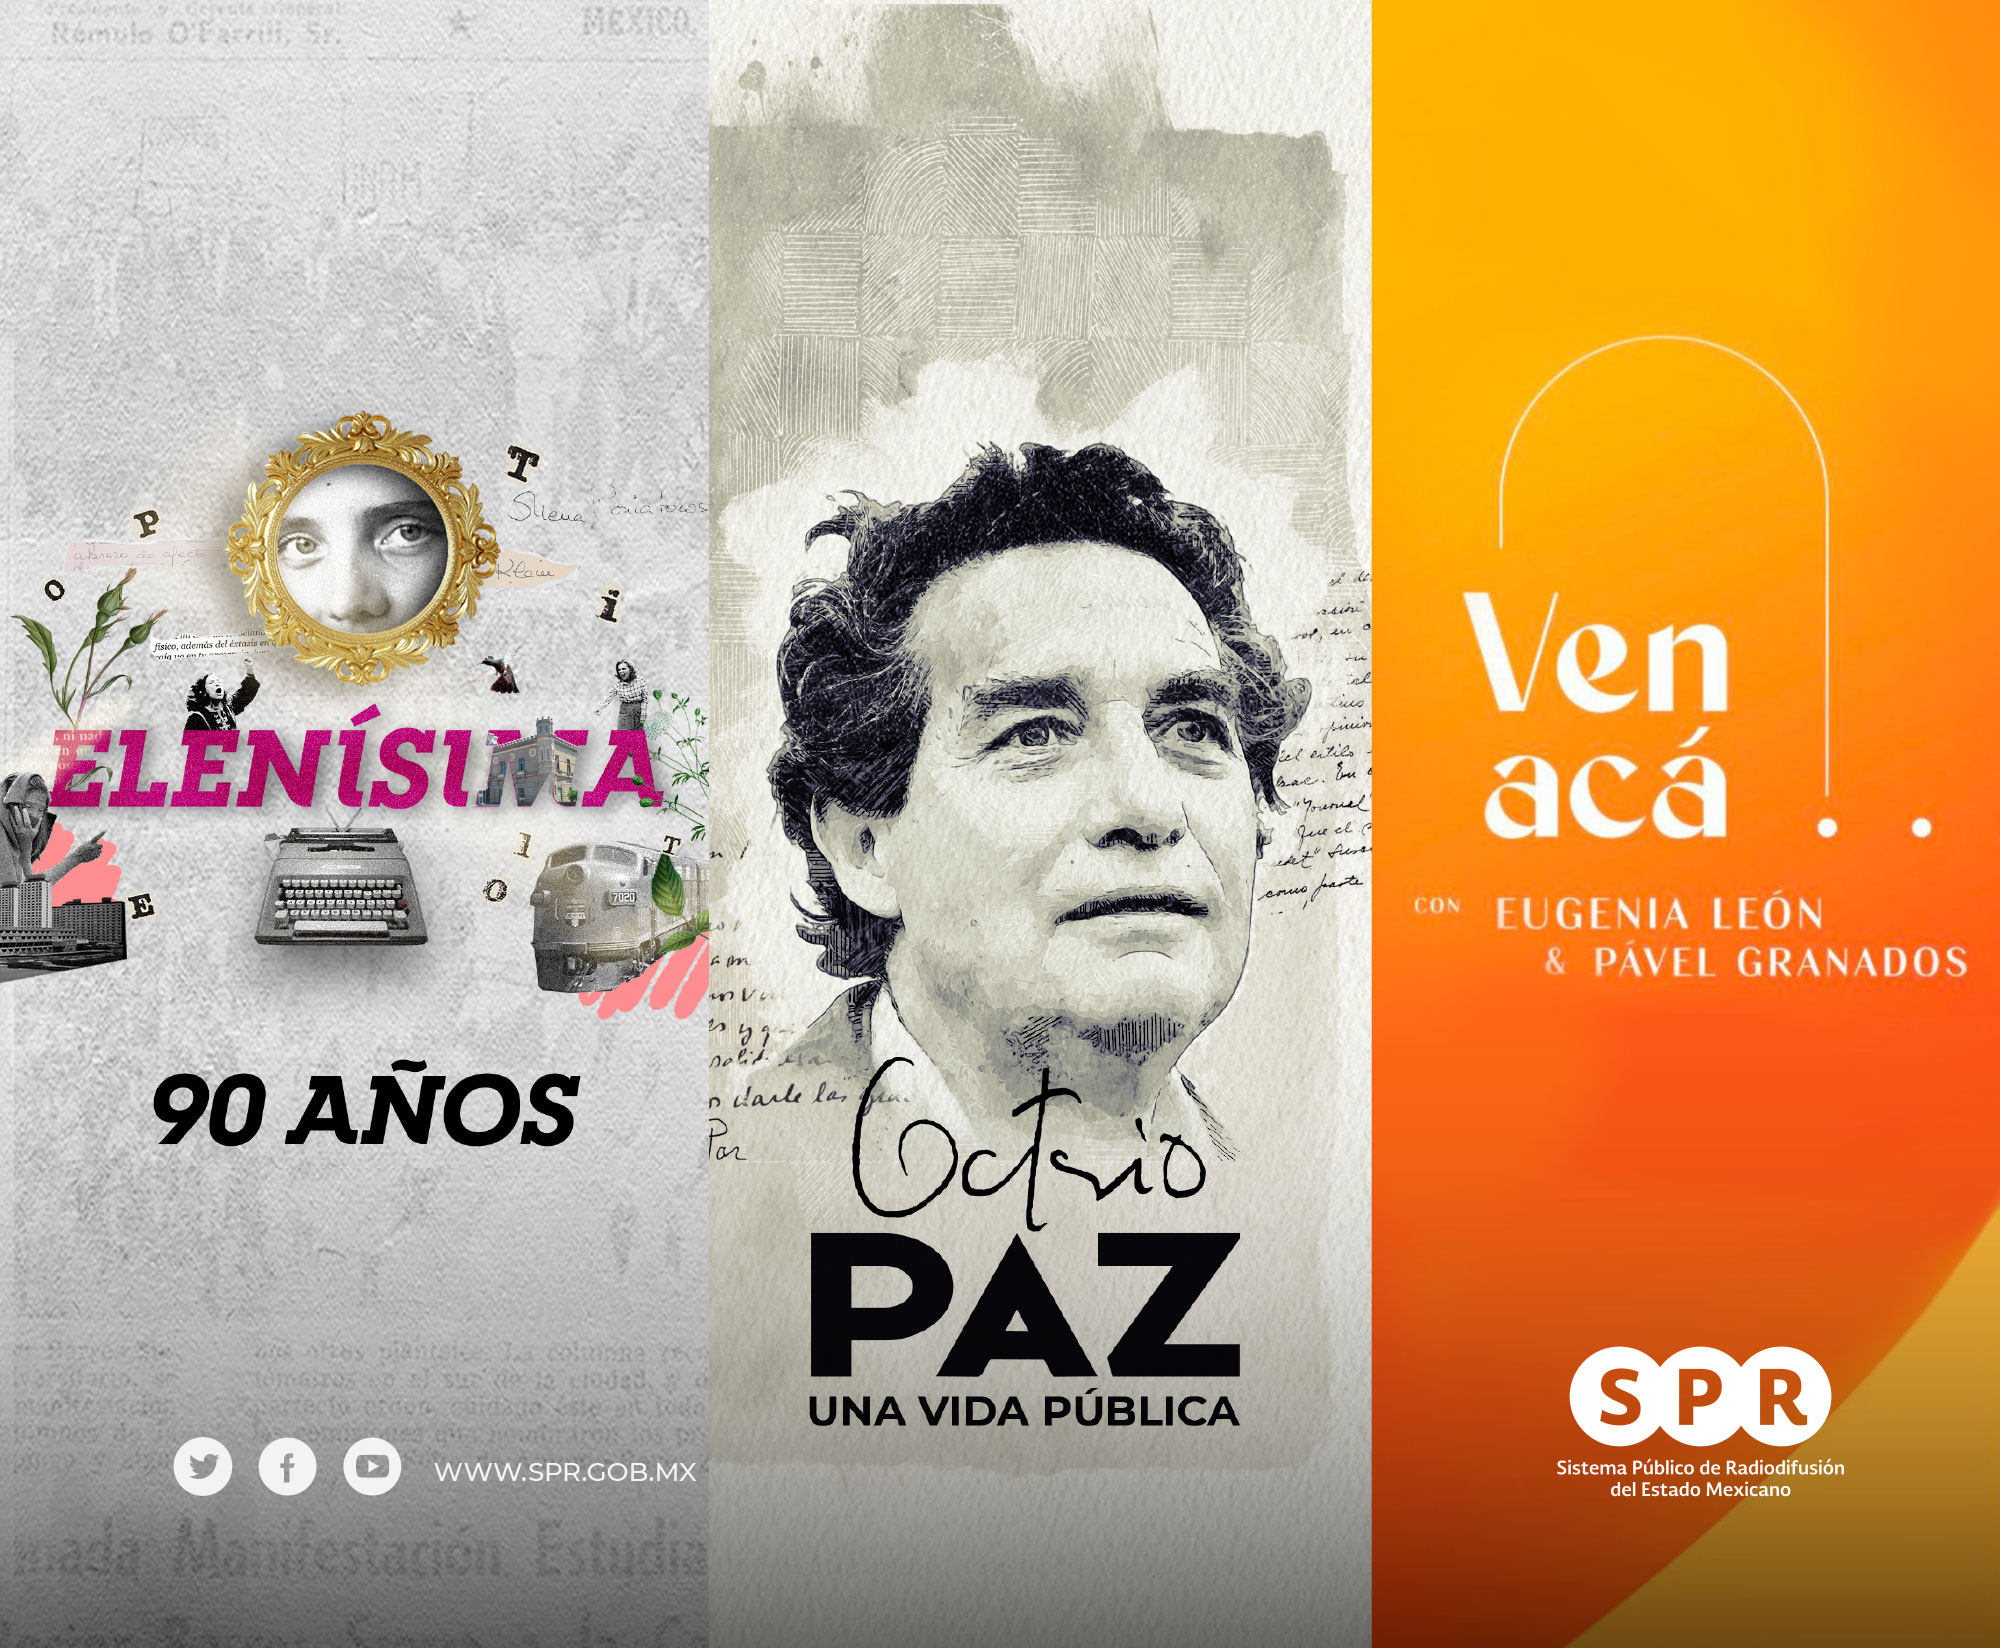 <i>Canal Catorce</i>, del SPR, transmitirá este 19 de abril programación cultural especial sobre Elena Poniatowska, Octavio Paz y la serie “Ven Acá”: la apuesta más ambiciosa de los medios públicos en cultura y entretenimiento